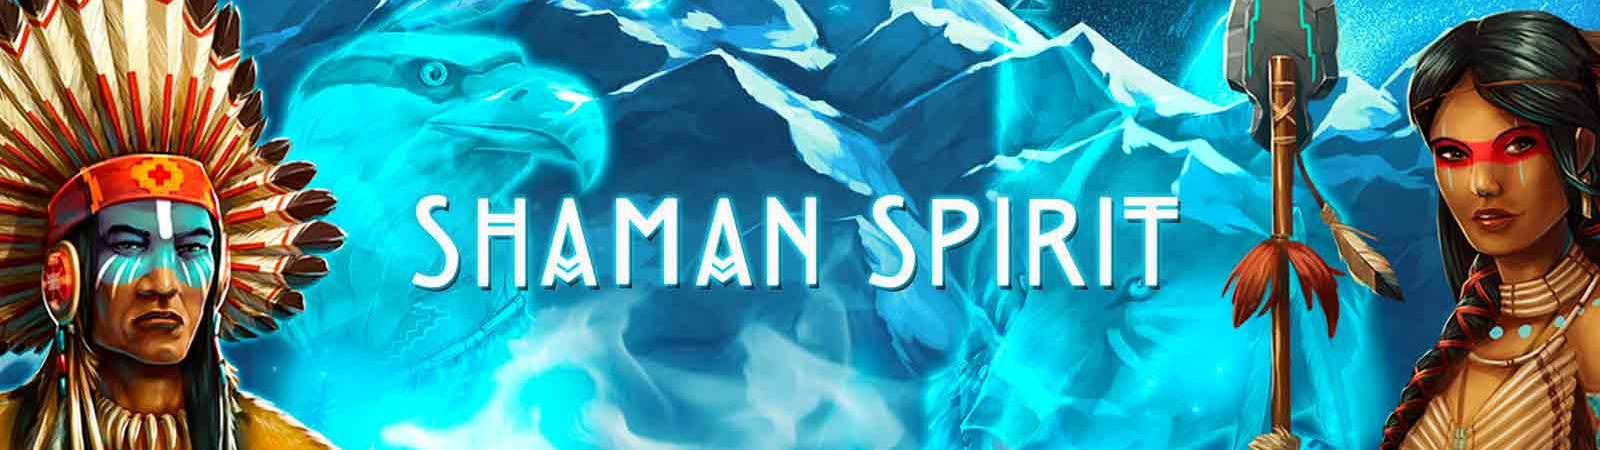 Shaman Spirit SlotsUK